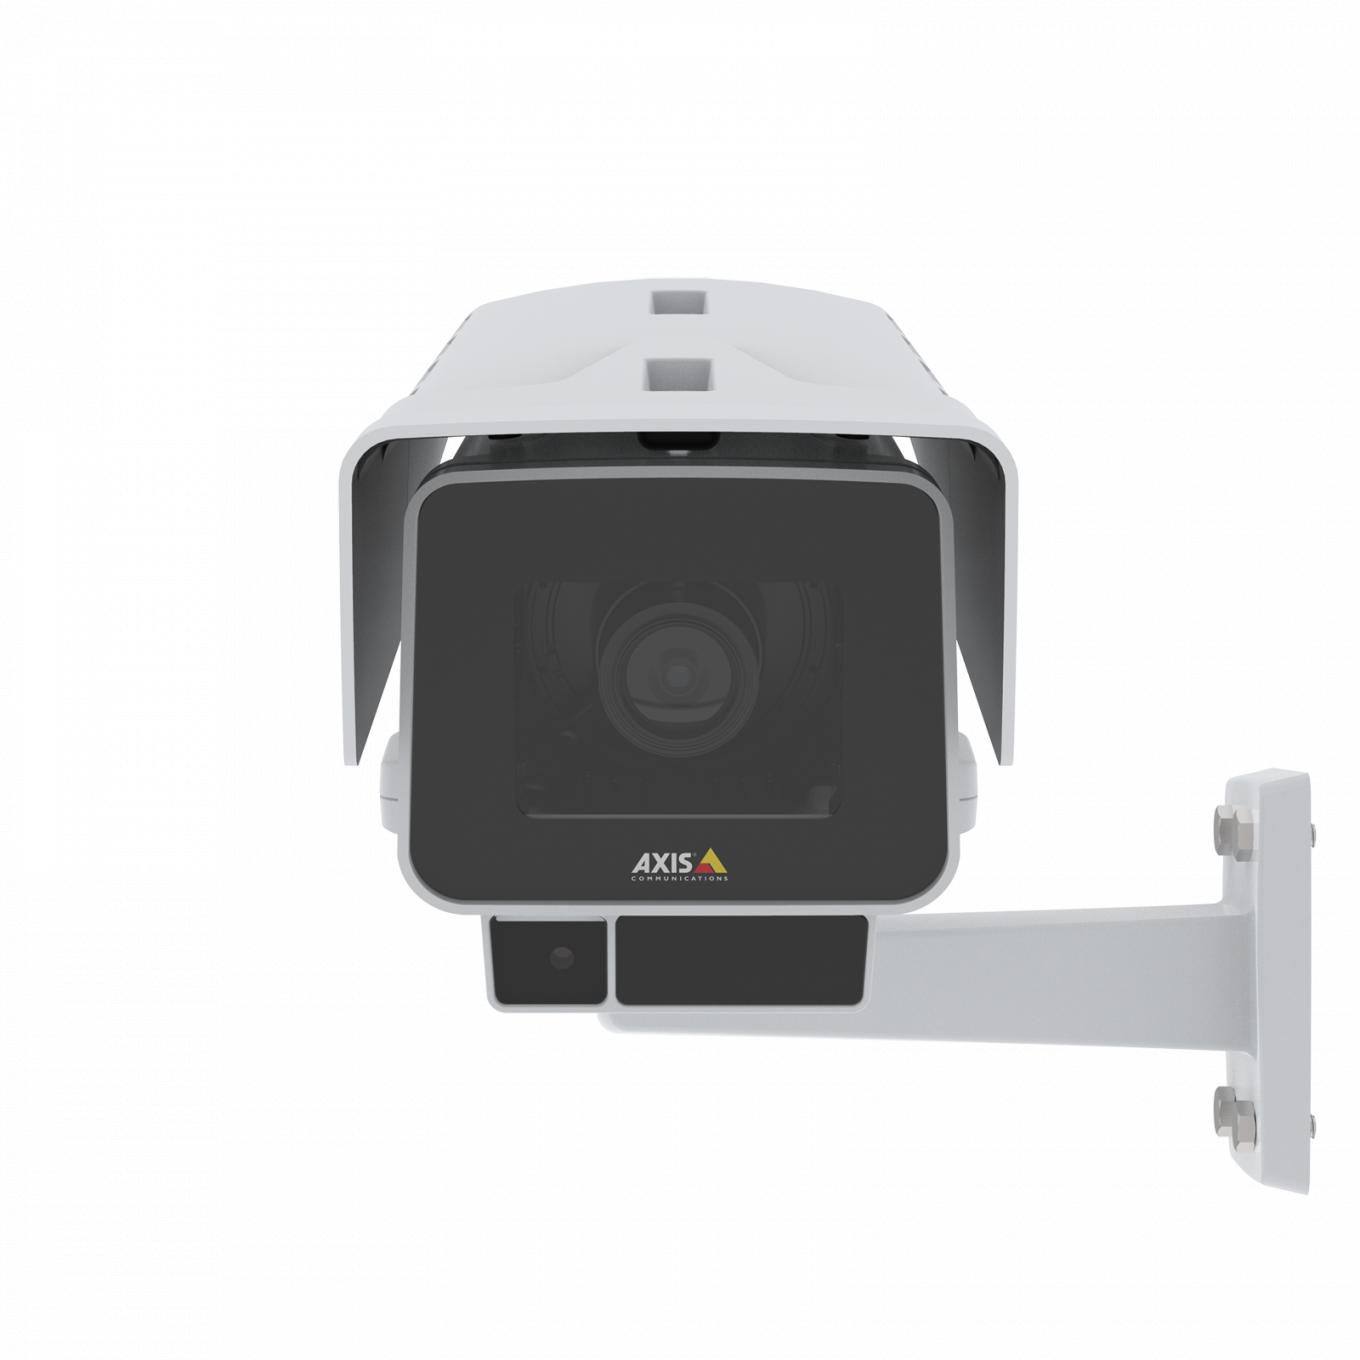 Die AXIS P1378-LE IP Camera verfügt über elektronische Bildstabilisierung und OptimizedIR. Vorderansicht des Produkts.